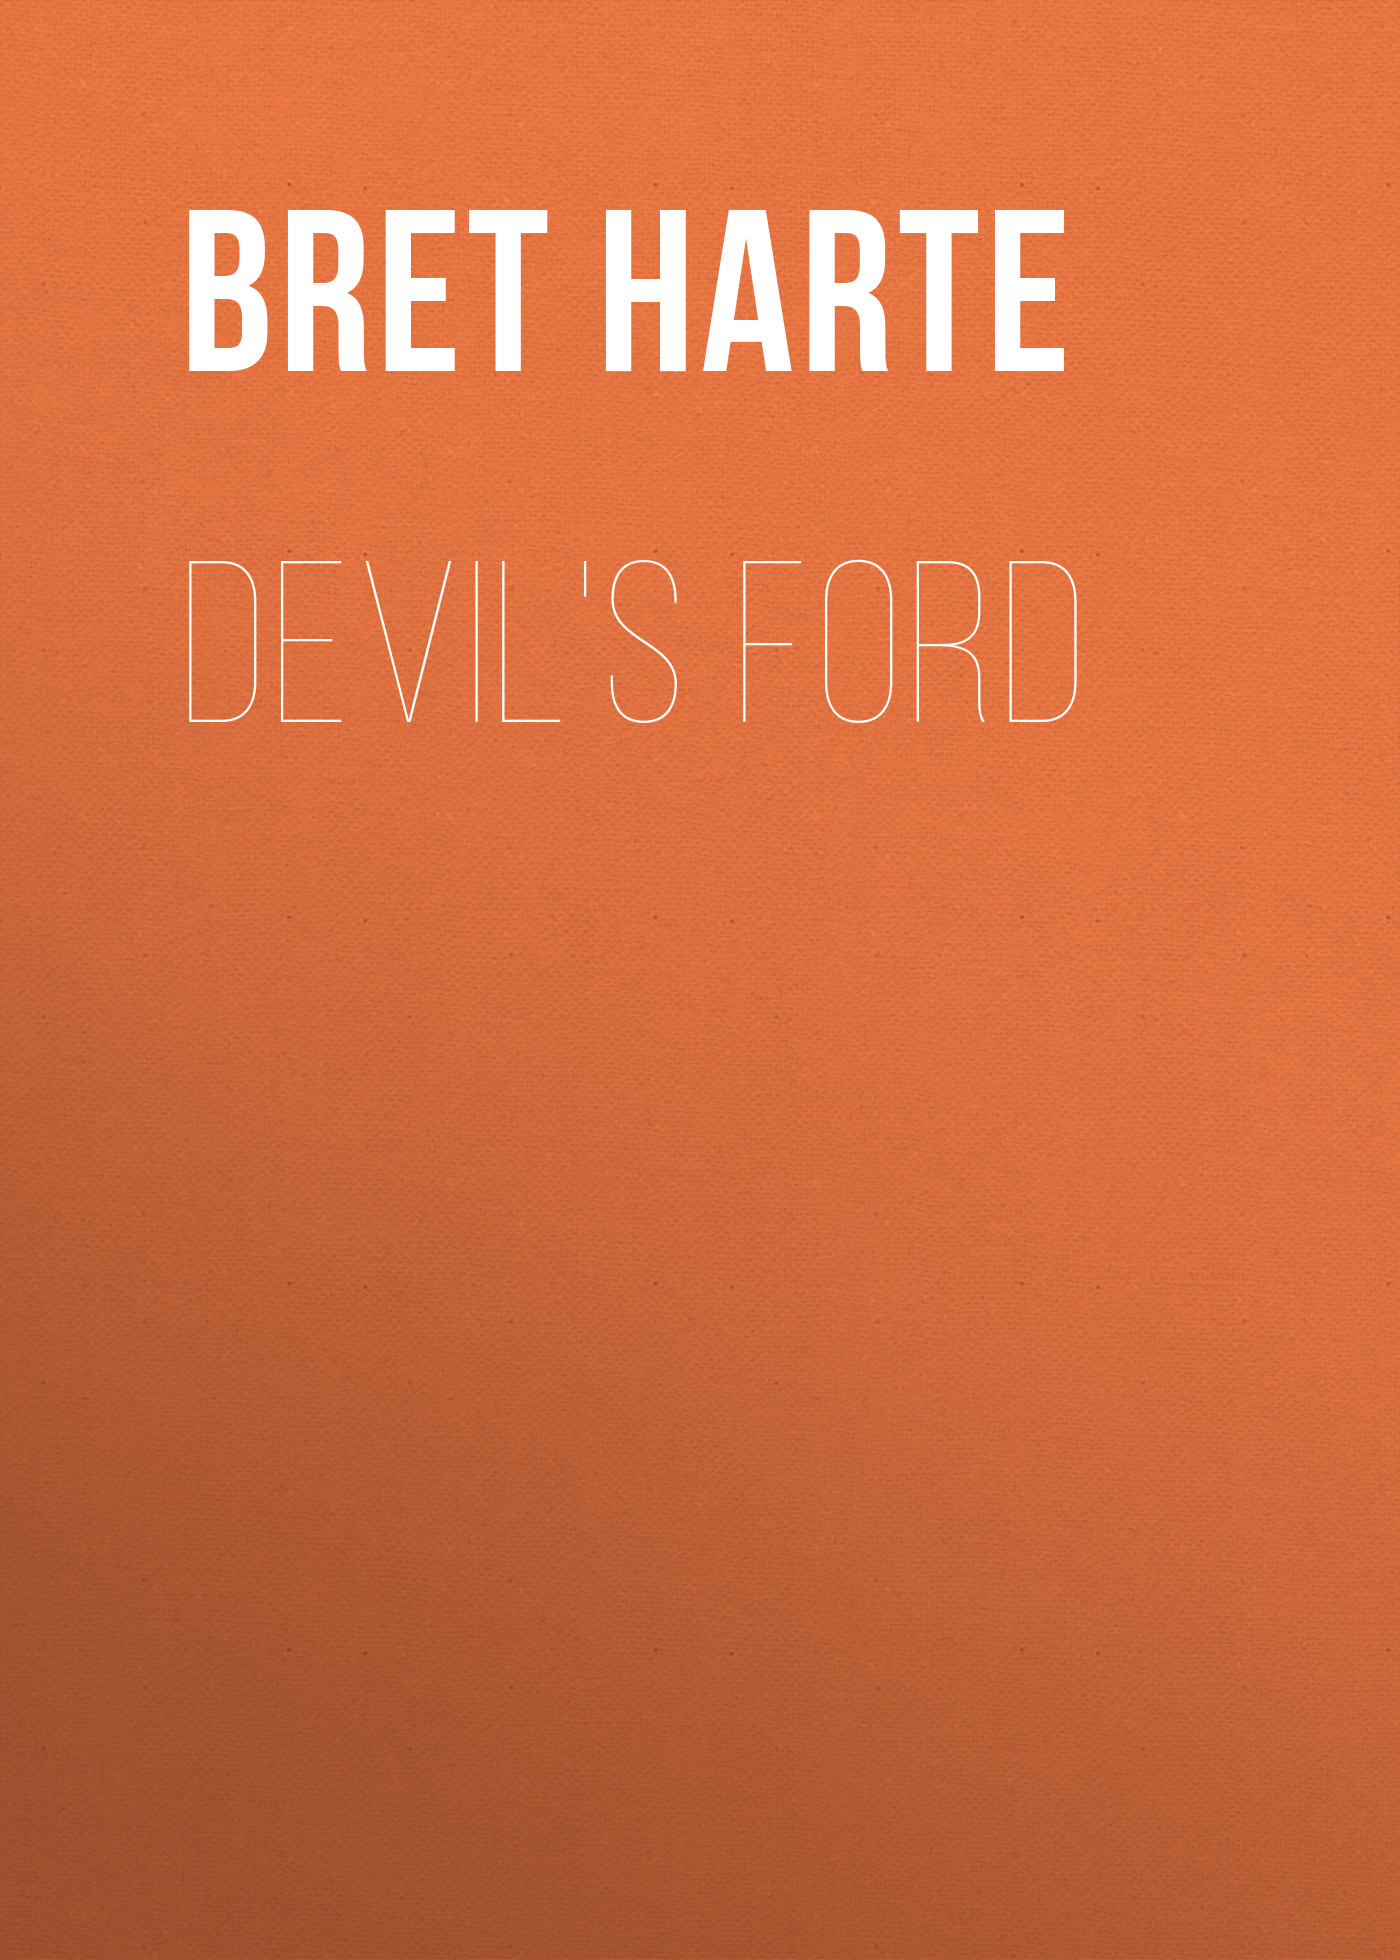 Книга Devil's Ford из серии , созданная Bret Harte, может относится к жанру Зарубежная фантастика, Литература 19 века, Зарубежная старинная литература, Зарубежная классика. Стоимость электронной книги Devil's Ford с идентификатором 36323460 составляет 0 руб.